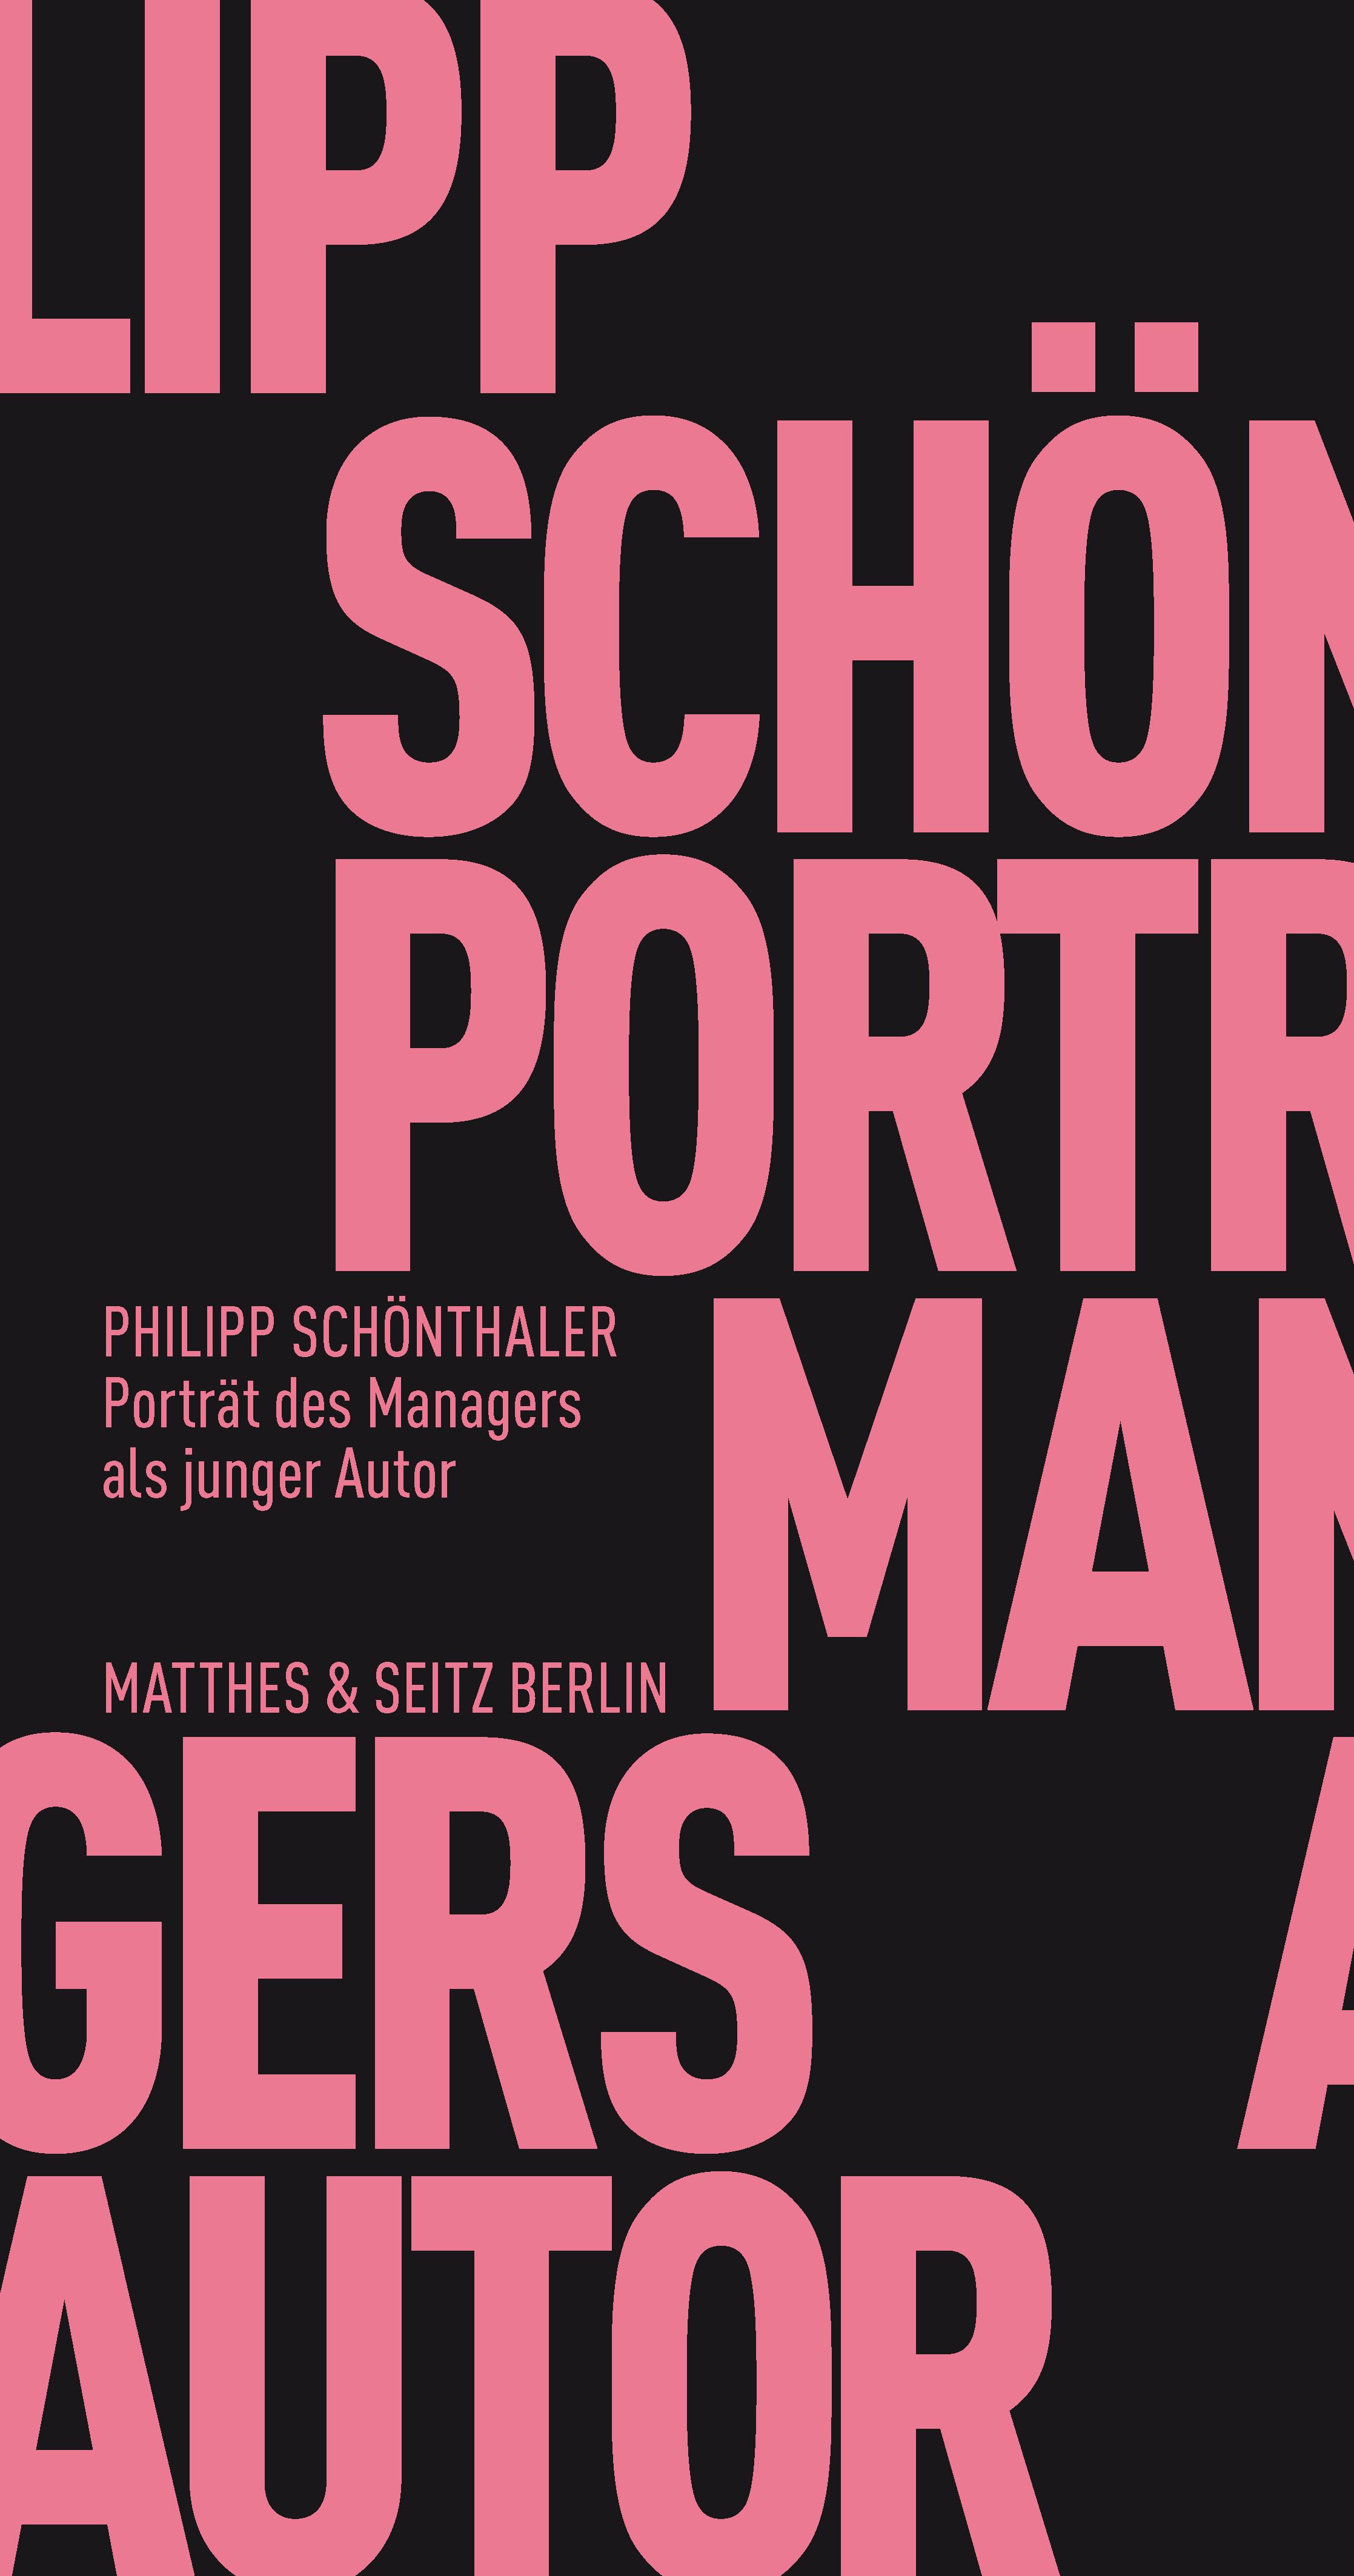 Portrait des Managers als junger Autor Verlag Matthes